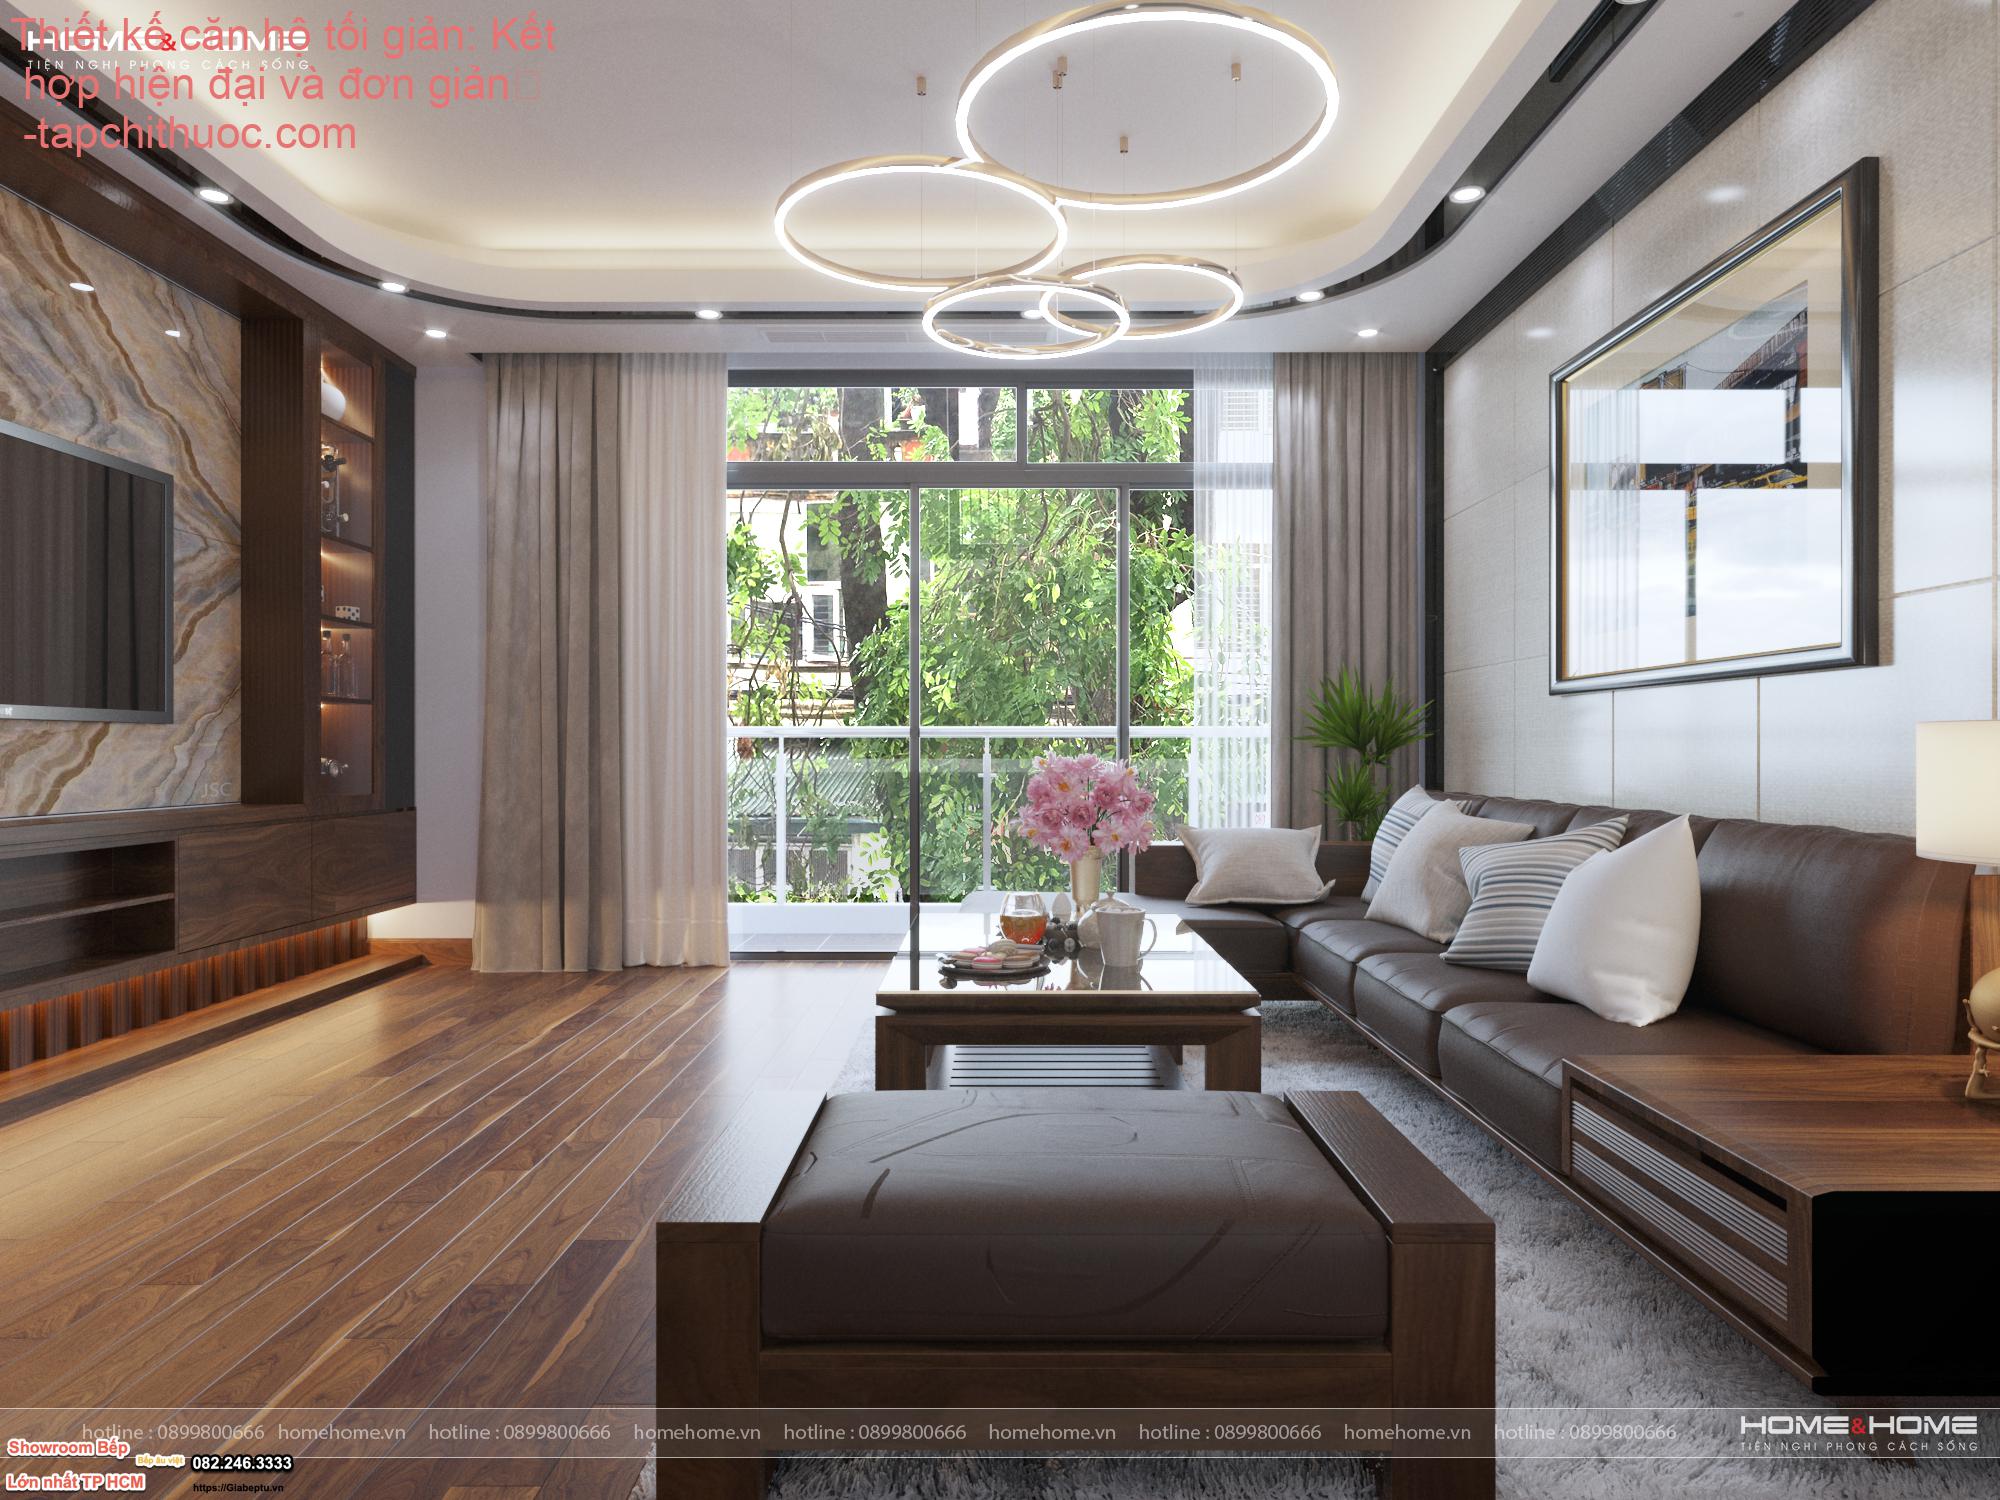 Thiết kế căn hộ tối giản: Kết hợp hiện đại và đơn giản
